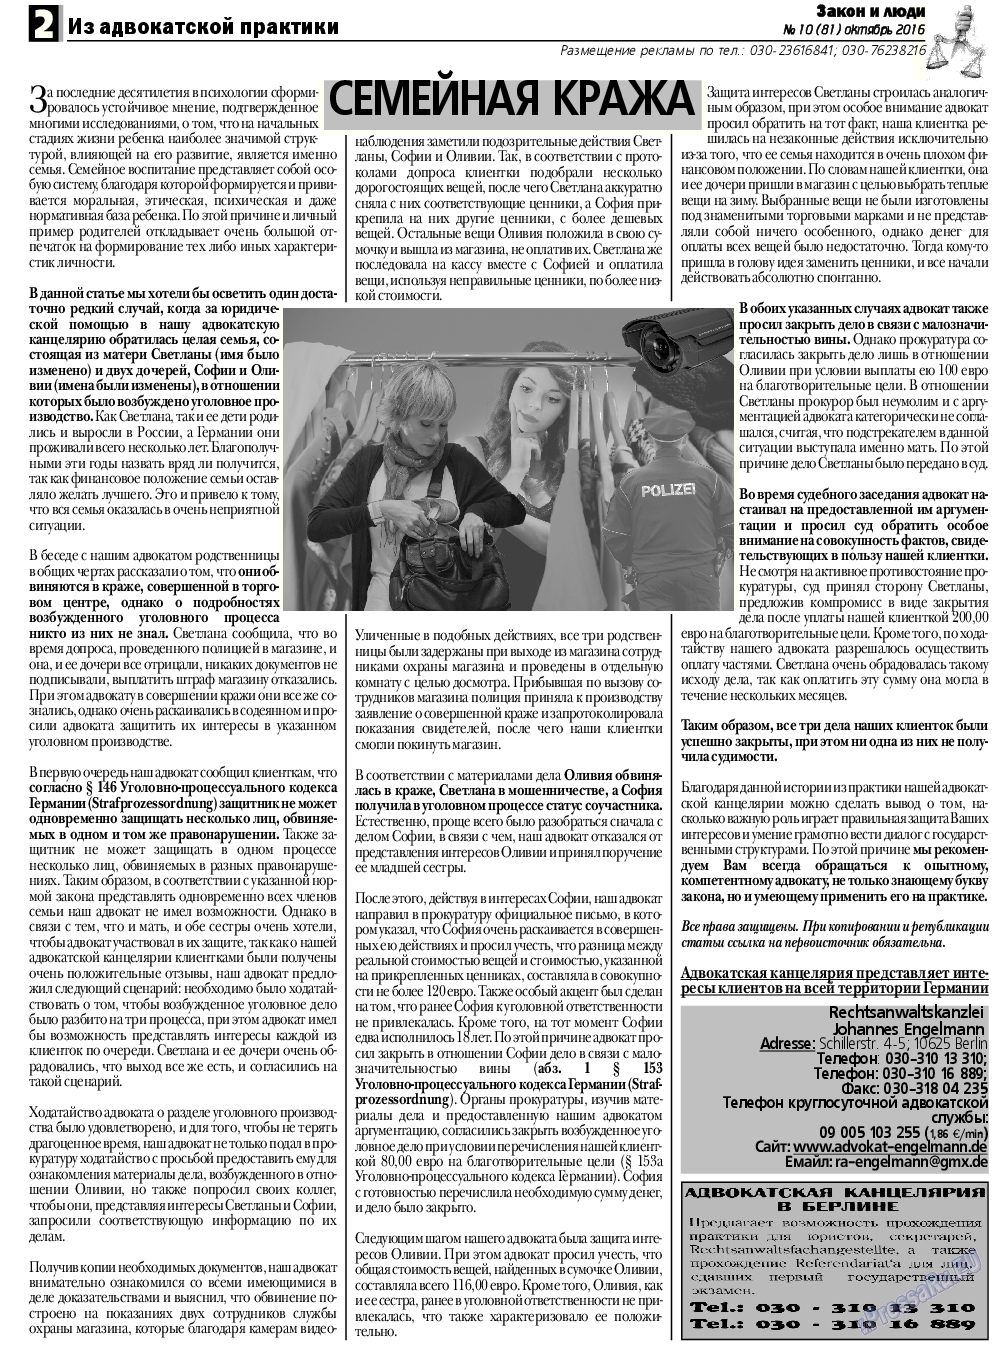 Закон и люди, газета. 2016 №10 стр.2